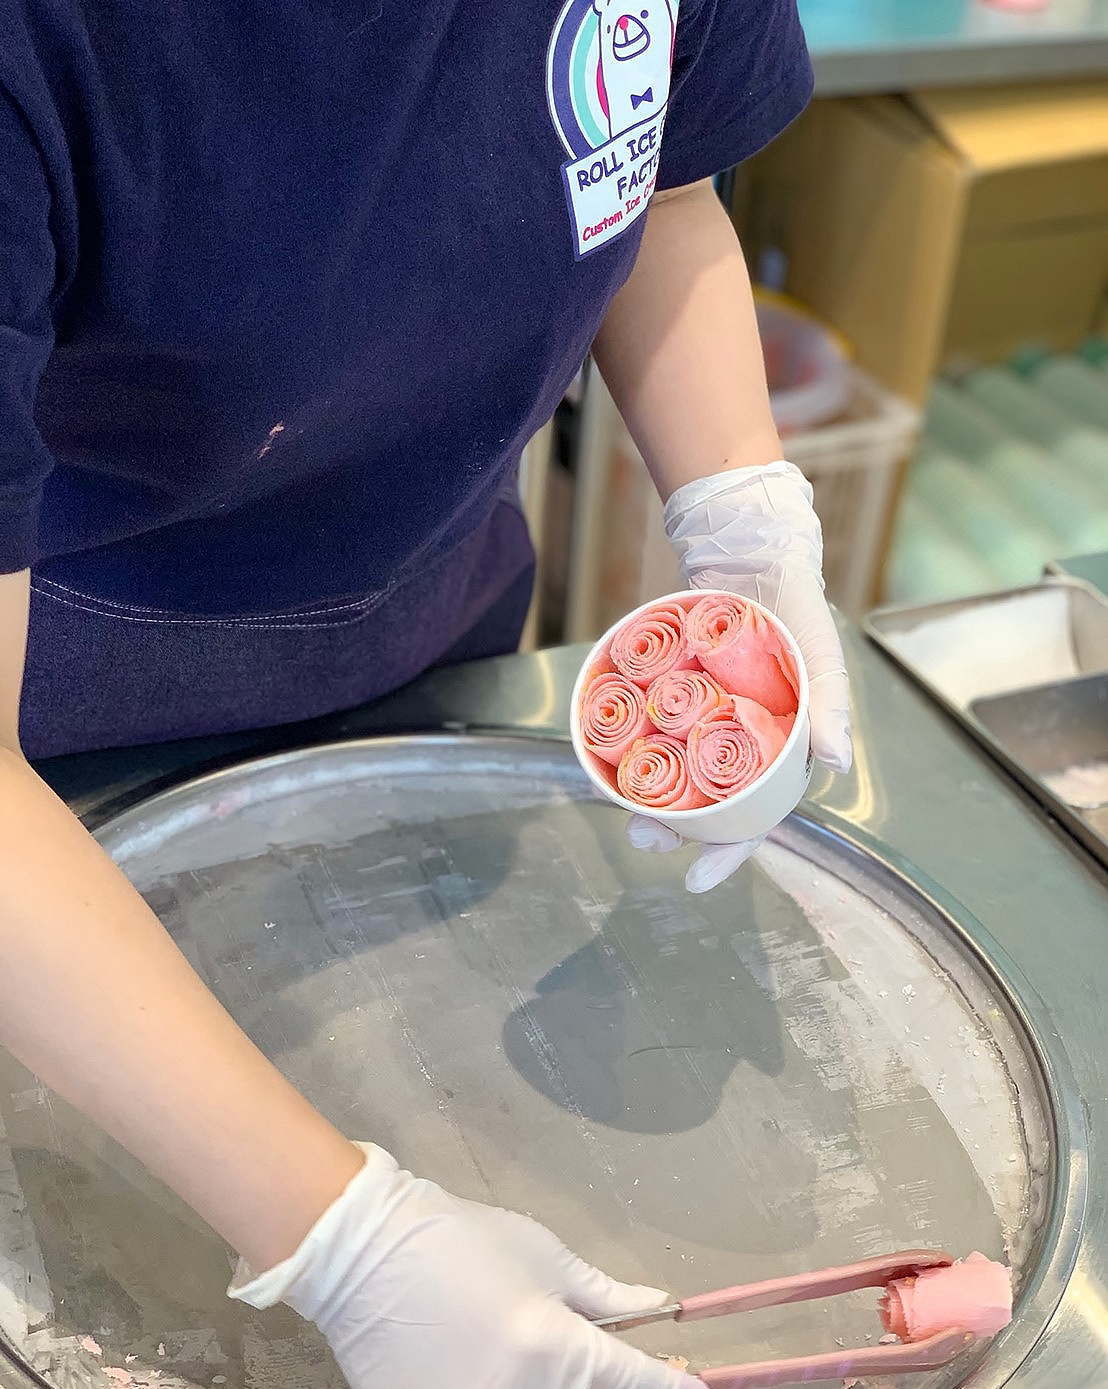 ロールアイスクリーム専門店「ロールアイスクリームファクトリー」アイスの作り方 過程